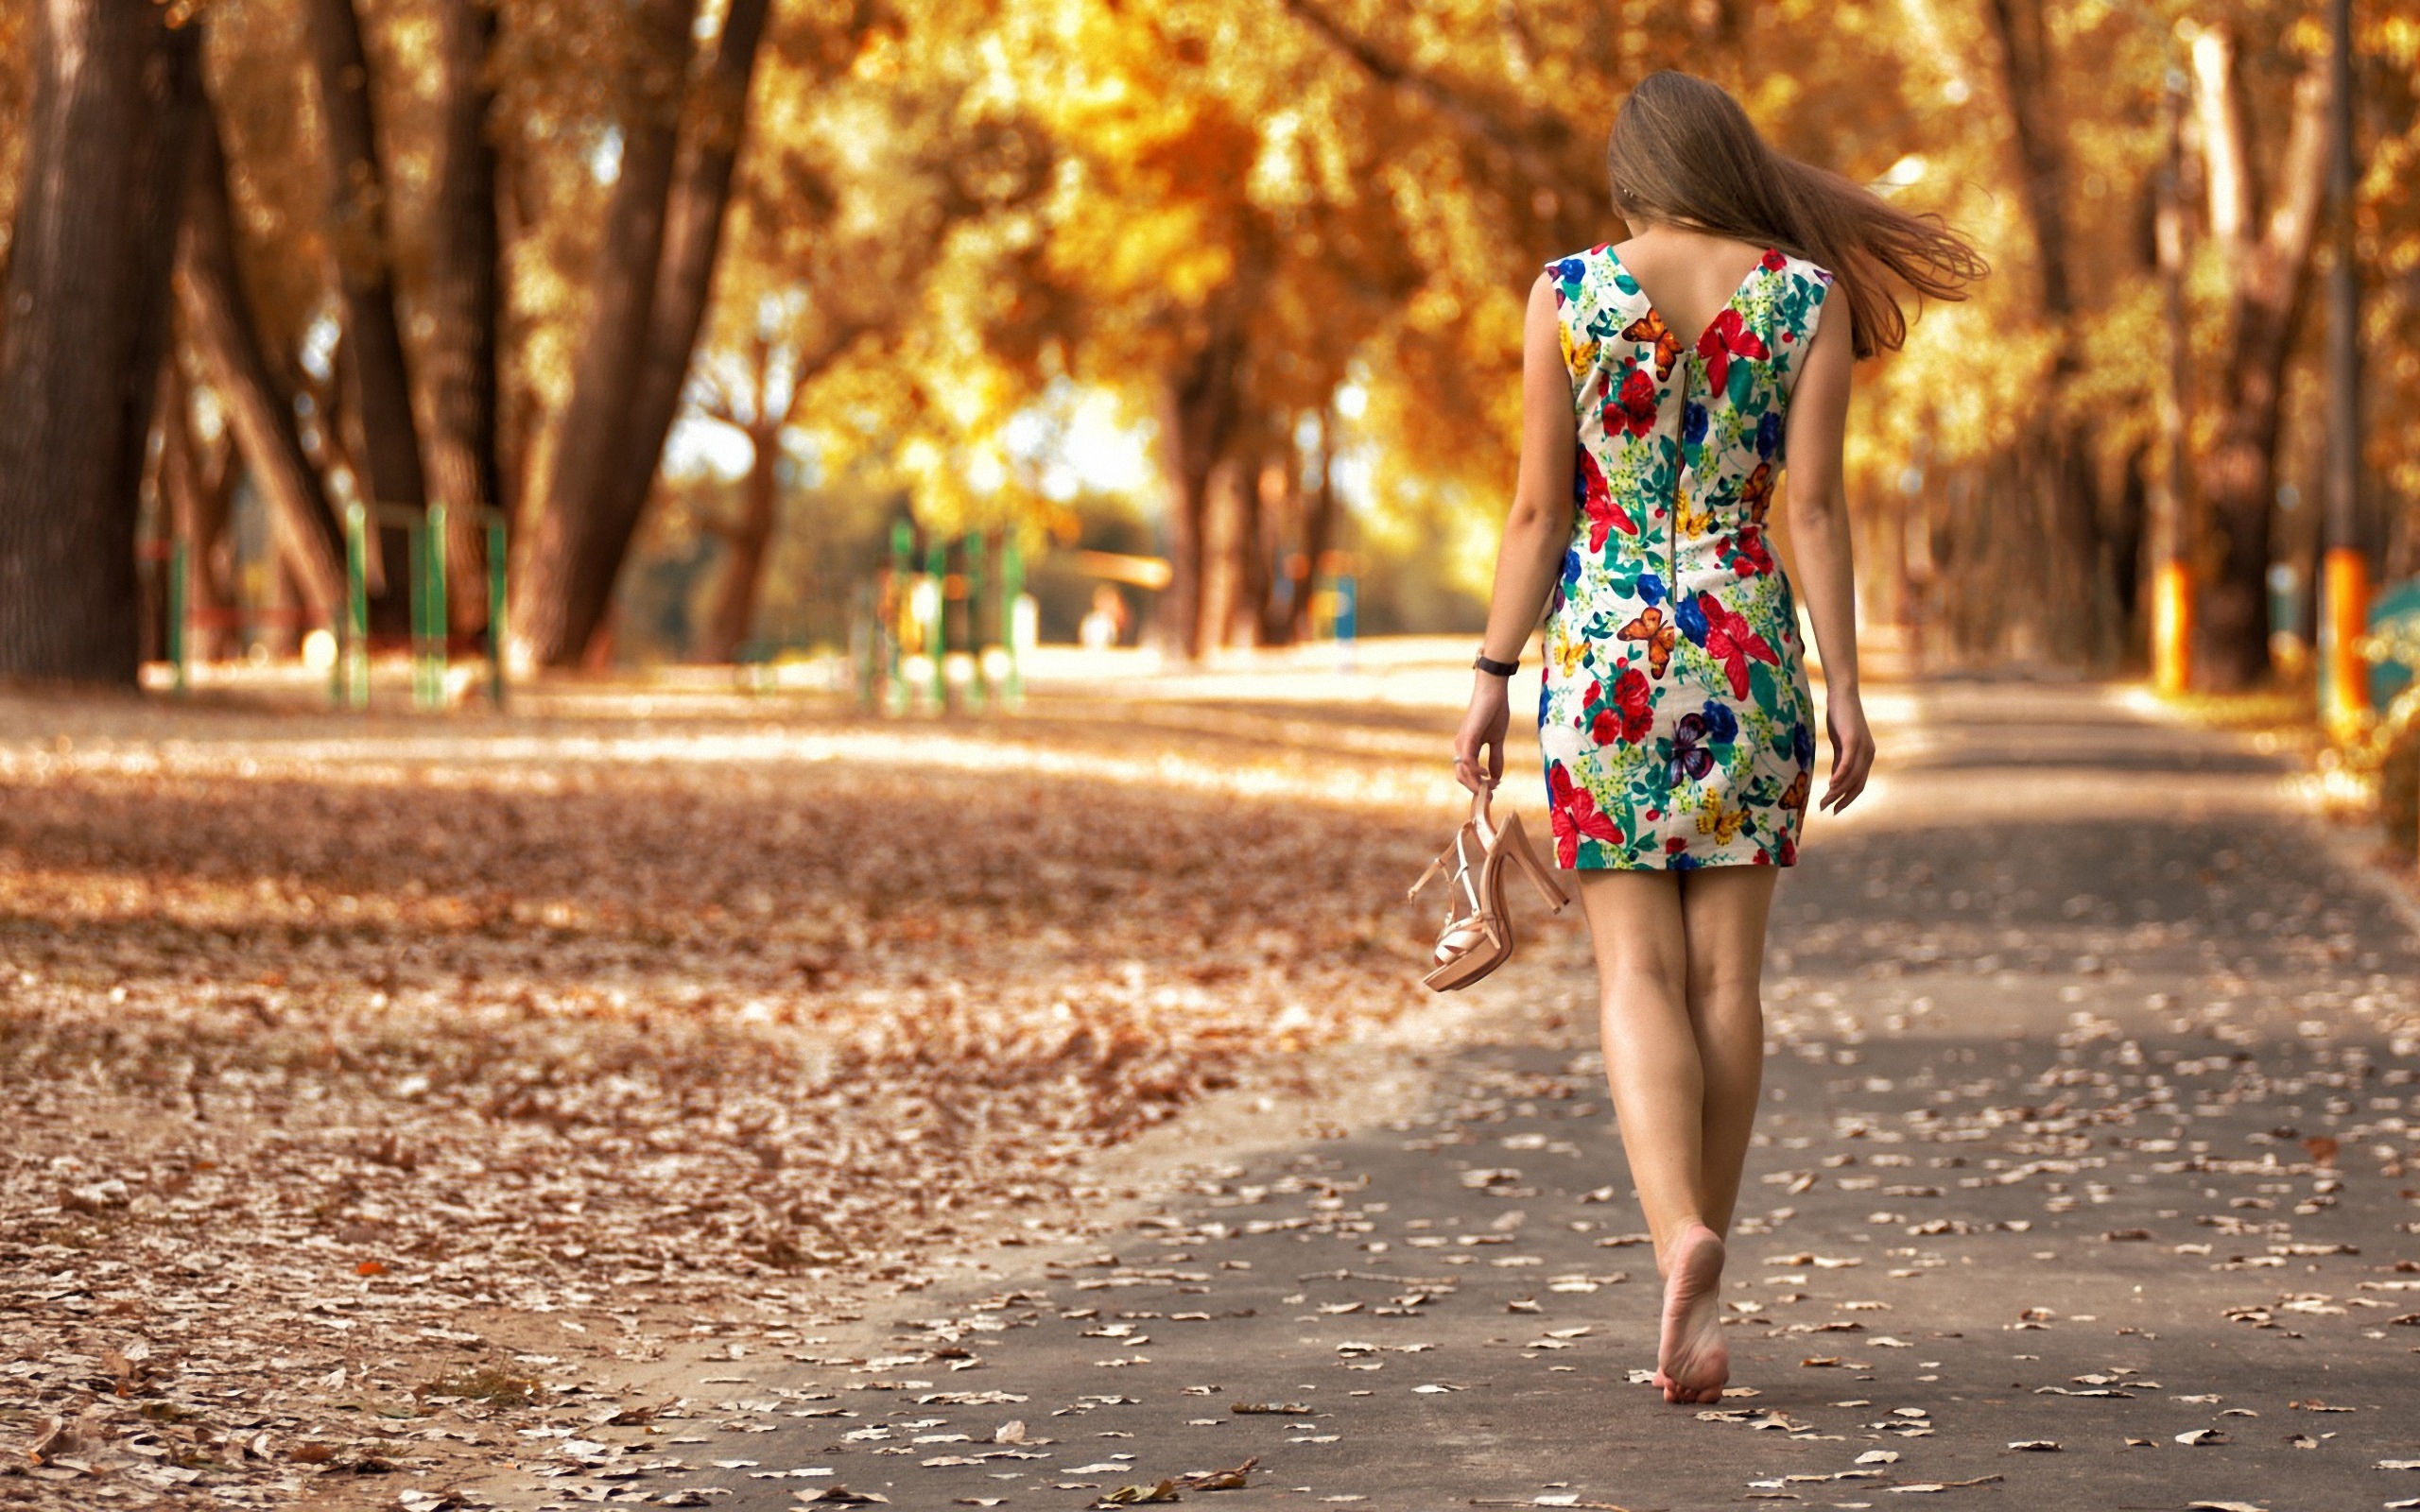 Скачай песни не ходи девки гулять. Фотосессия в парке летом. Девушка в платье летнем. Девушка гуляет в парке.